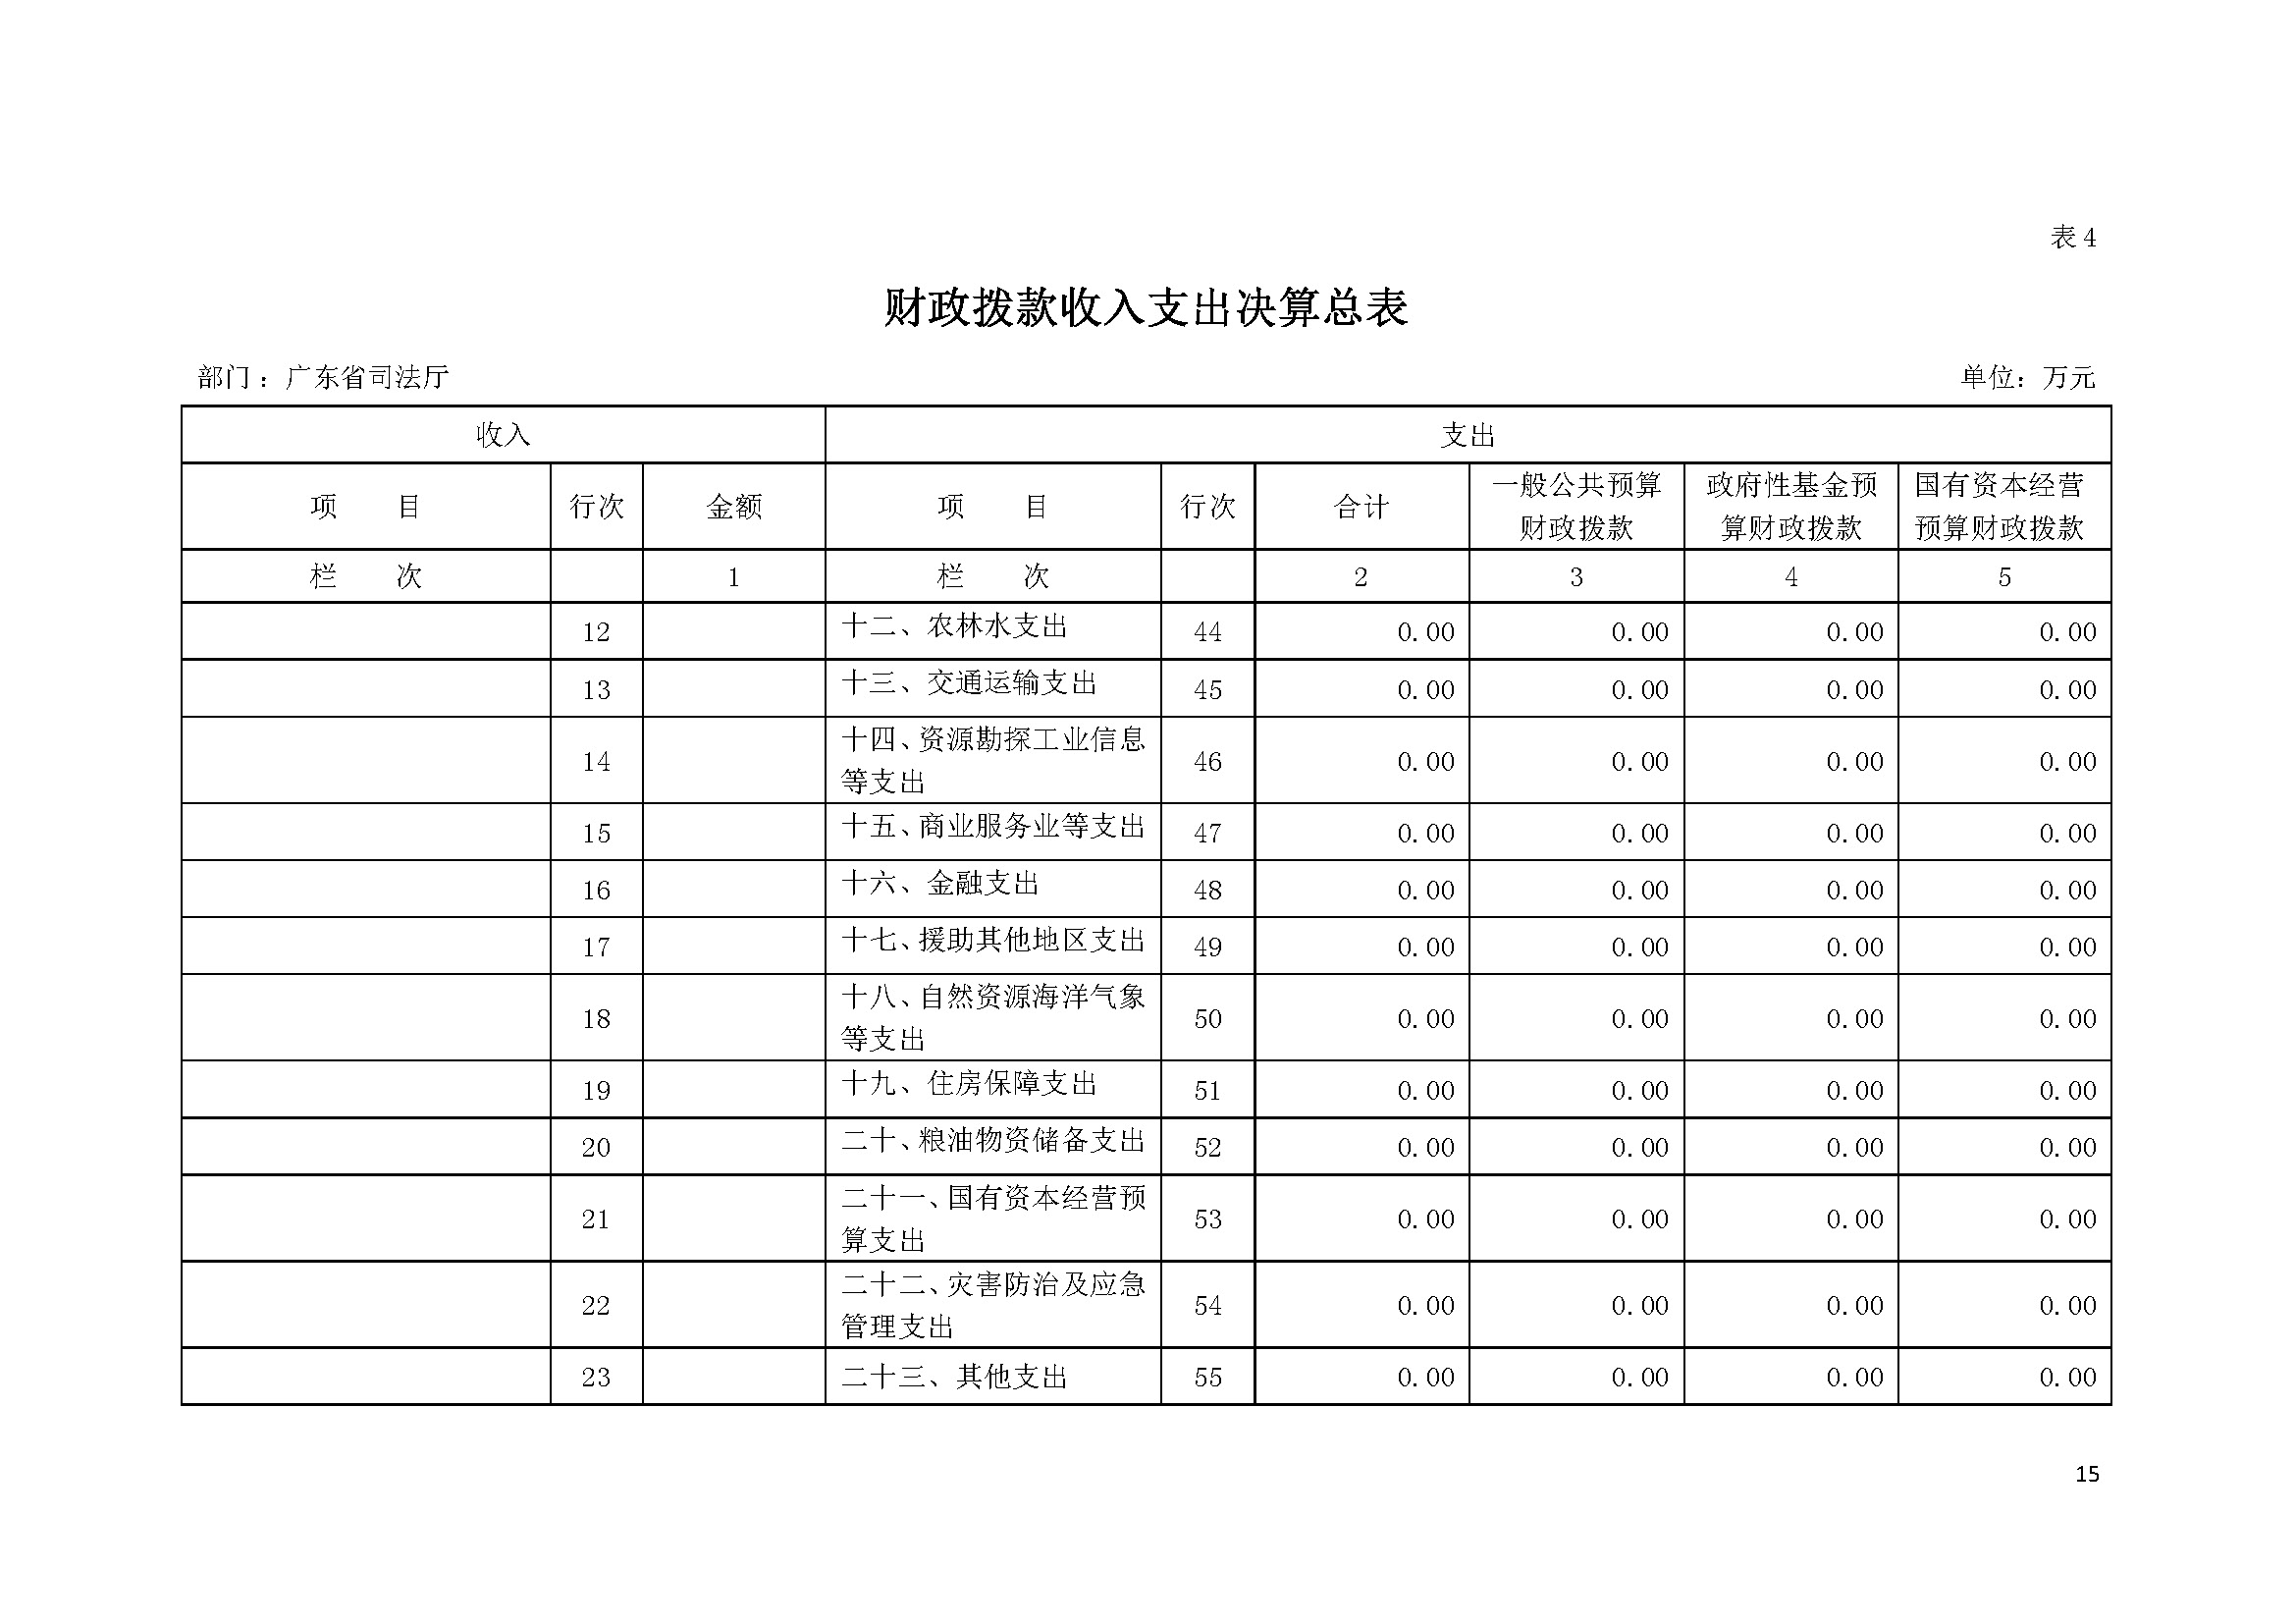 2021年广东省司法厅部门决算 _页面_15.jpg